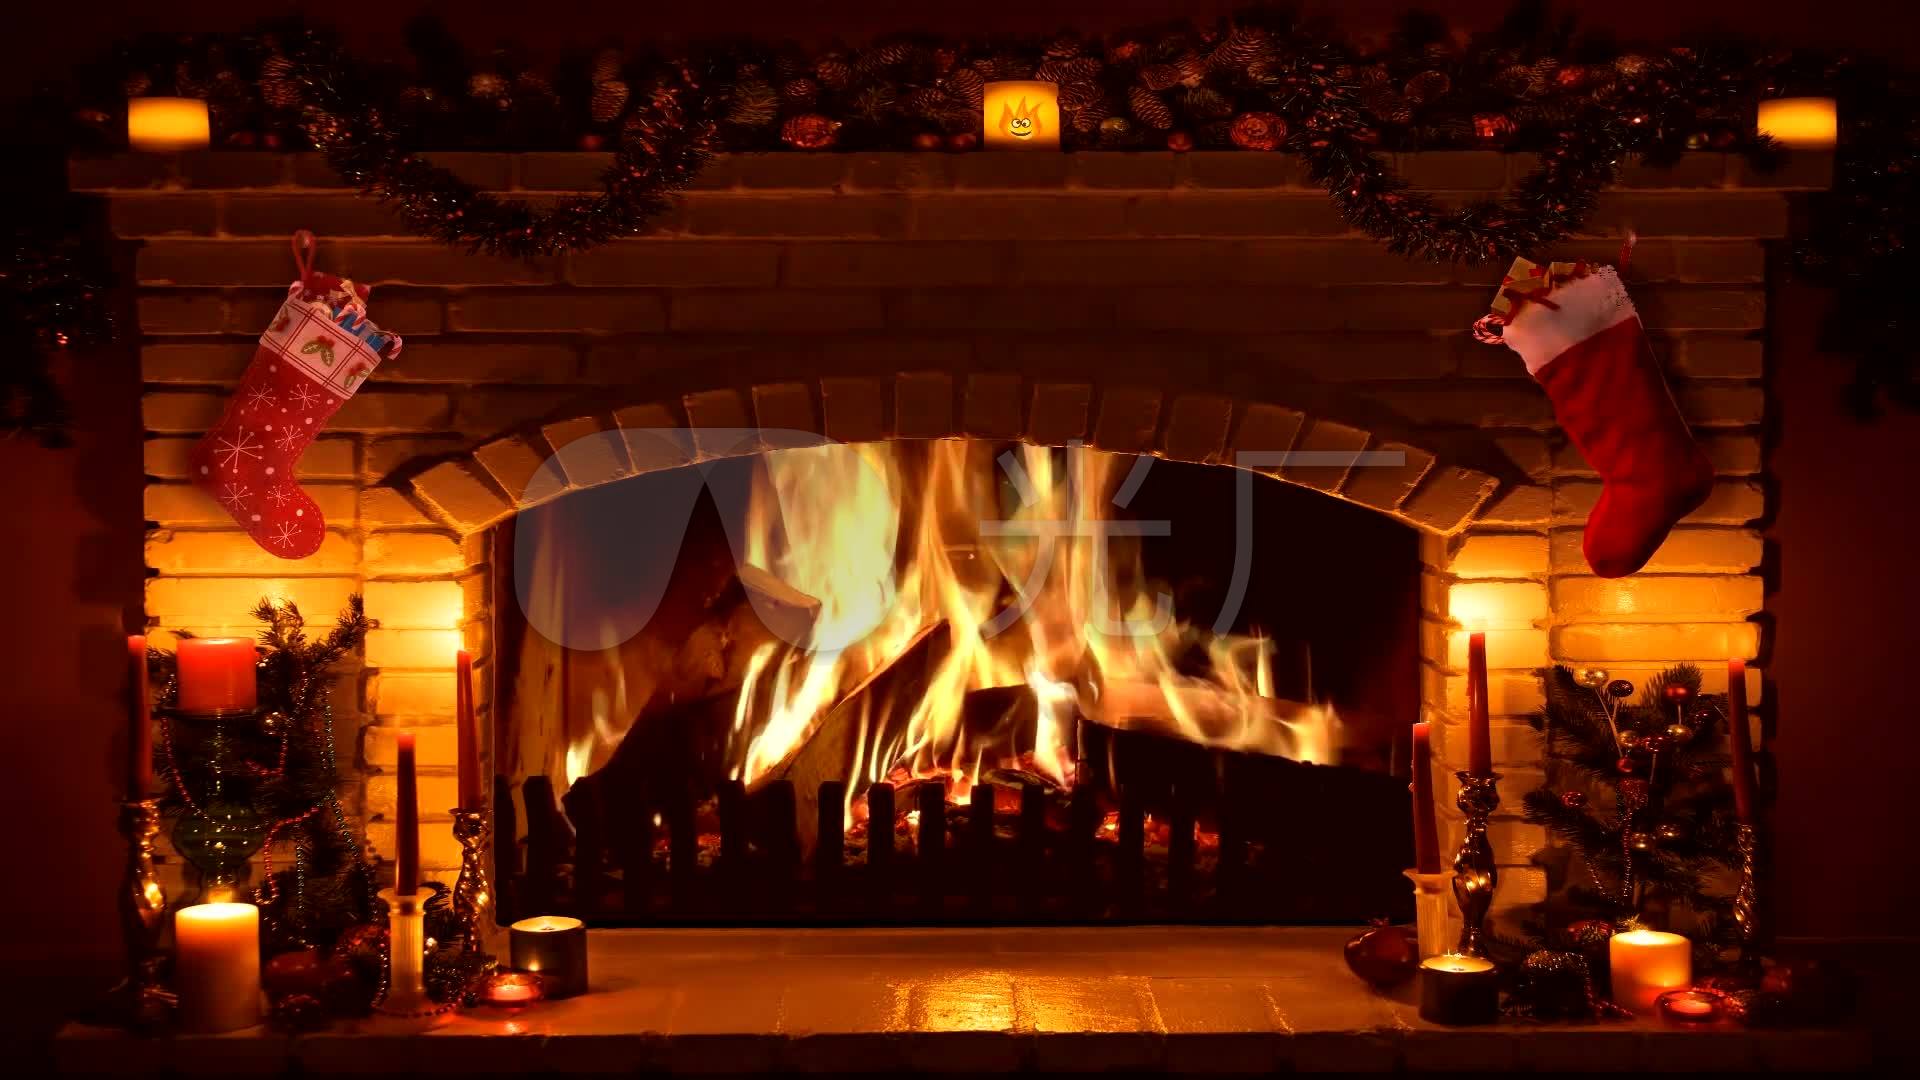 壁炉火炉圣诞袜蜡烛燃烧